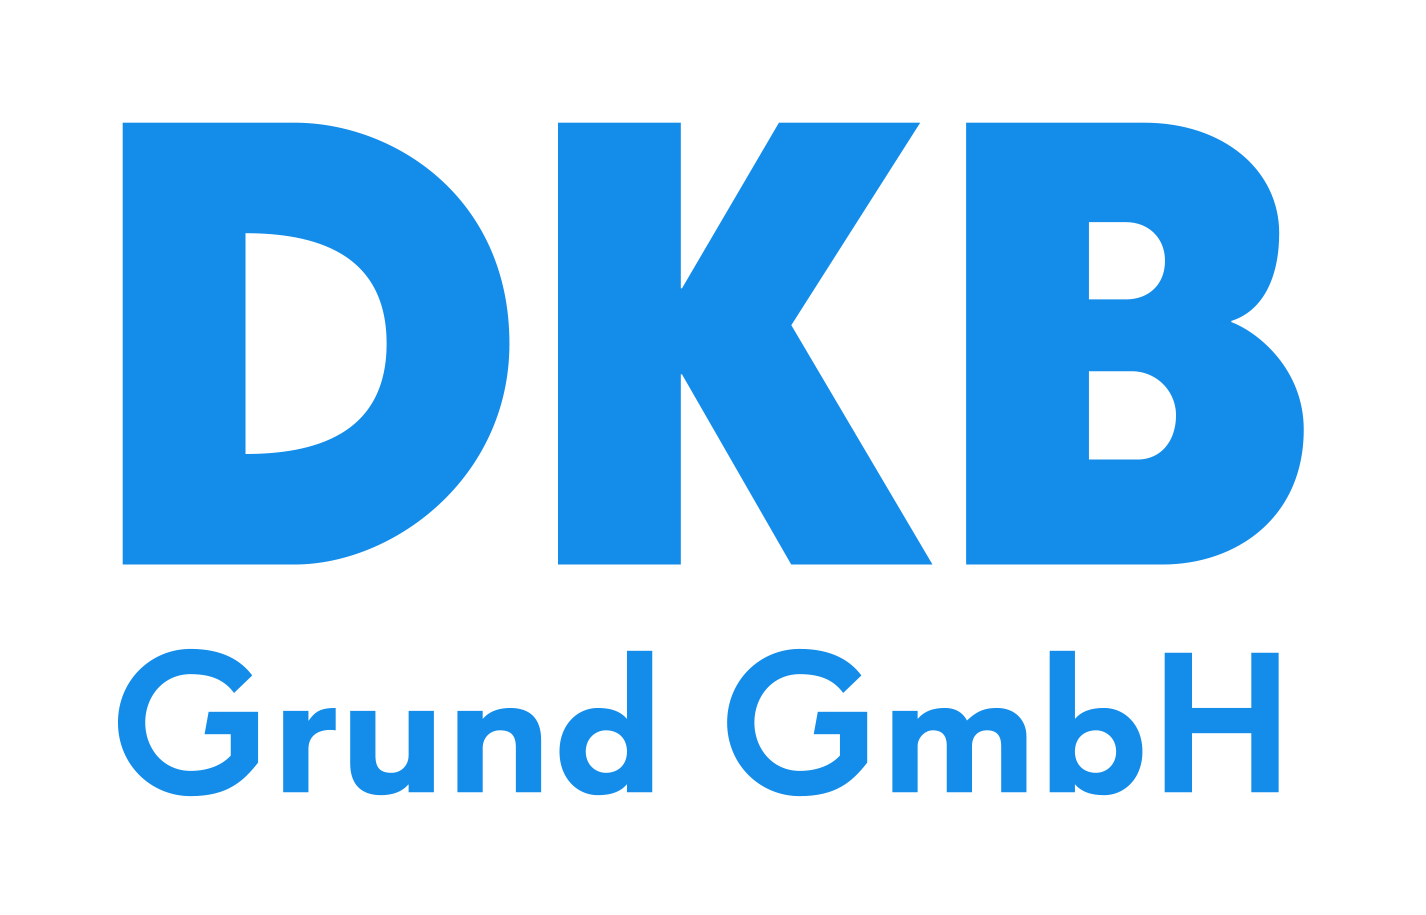 DKB Grund GmbH